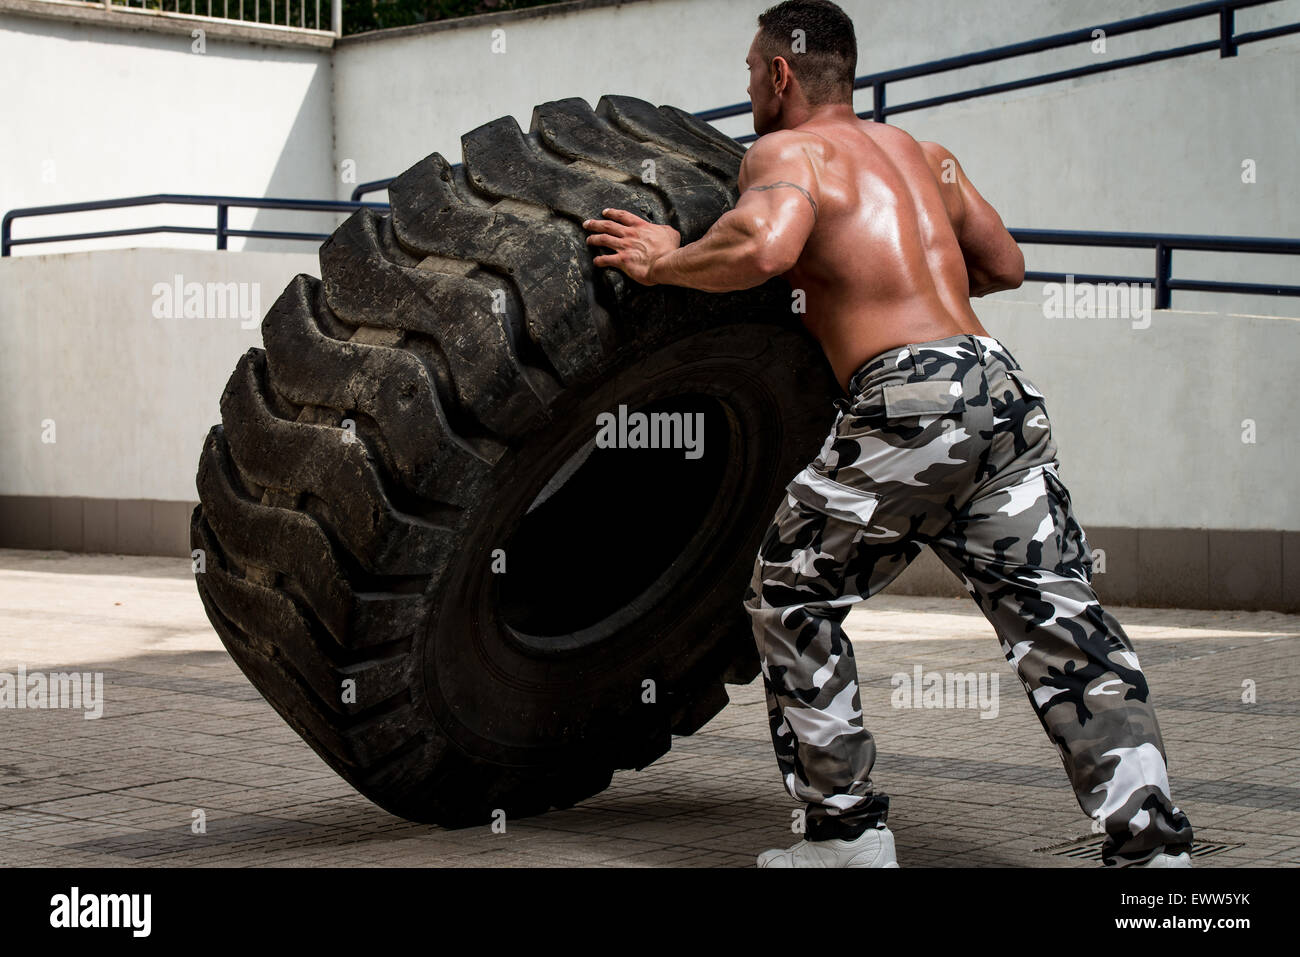 Un homme musclé qui participent à une séance d'entraînement en faisant monter un pneu flip Banque D'Images